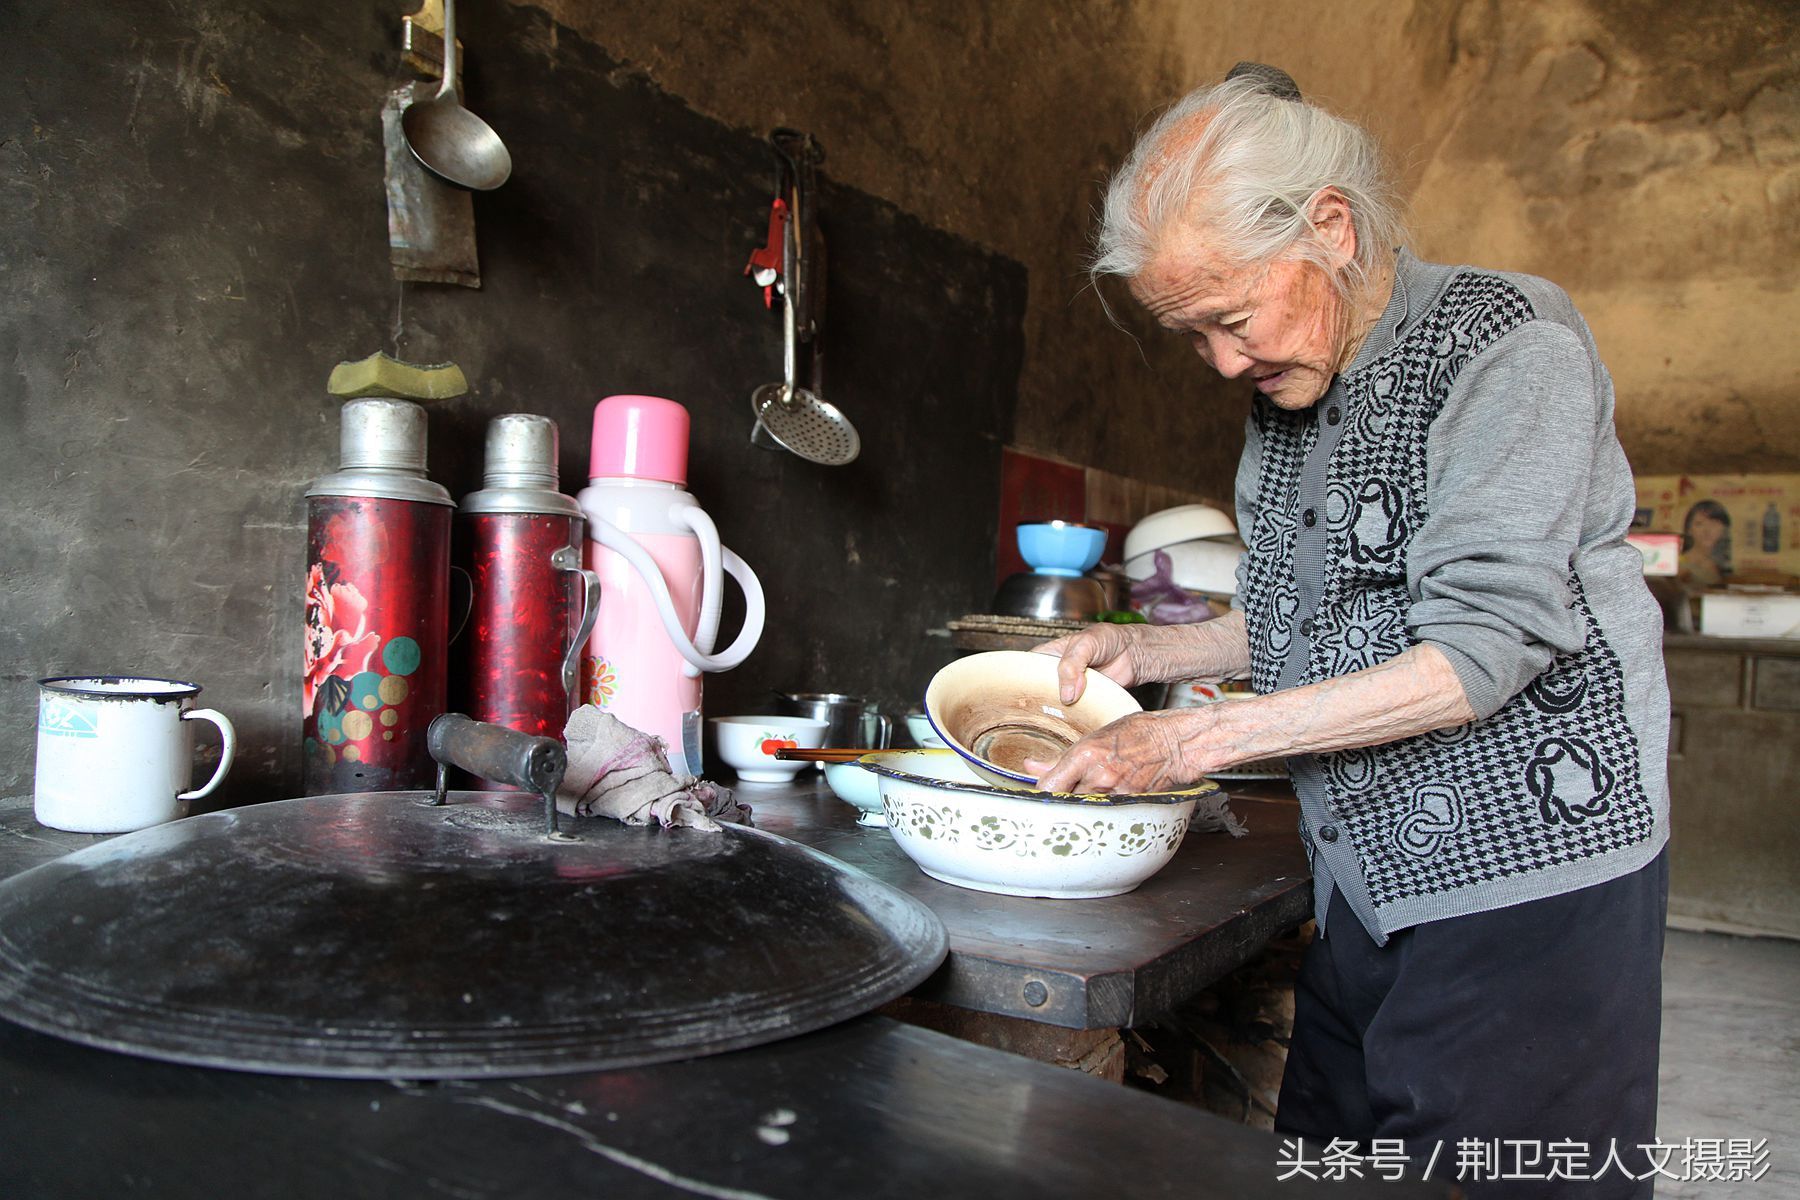 山西101岁农村老人爱子情深,天天给71岁儿子做饭干